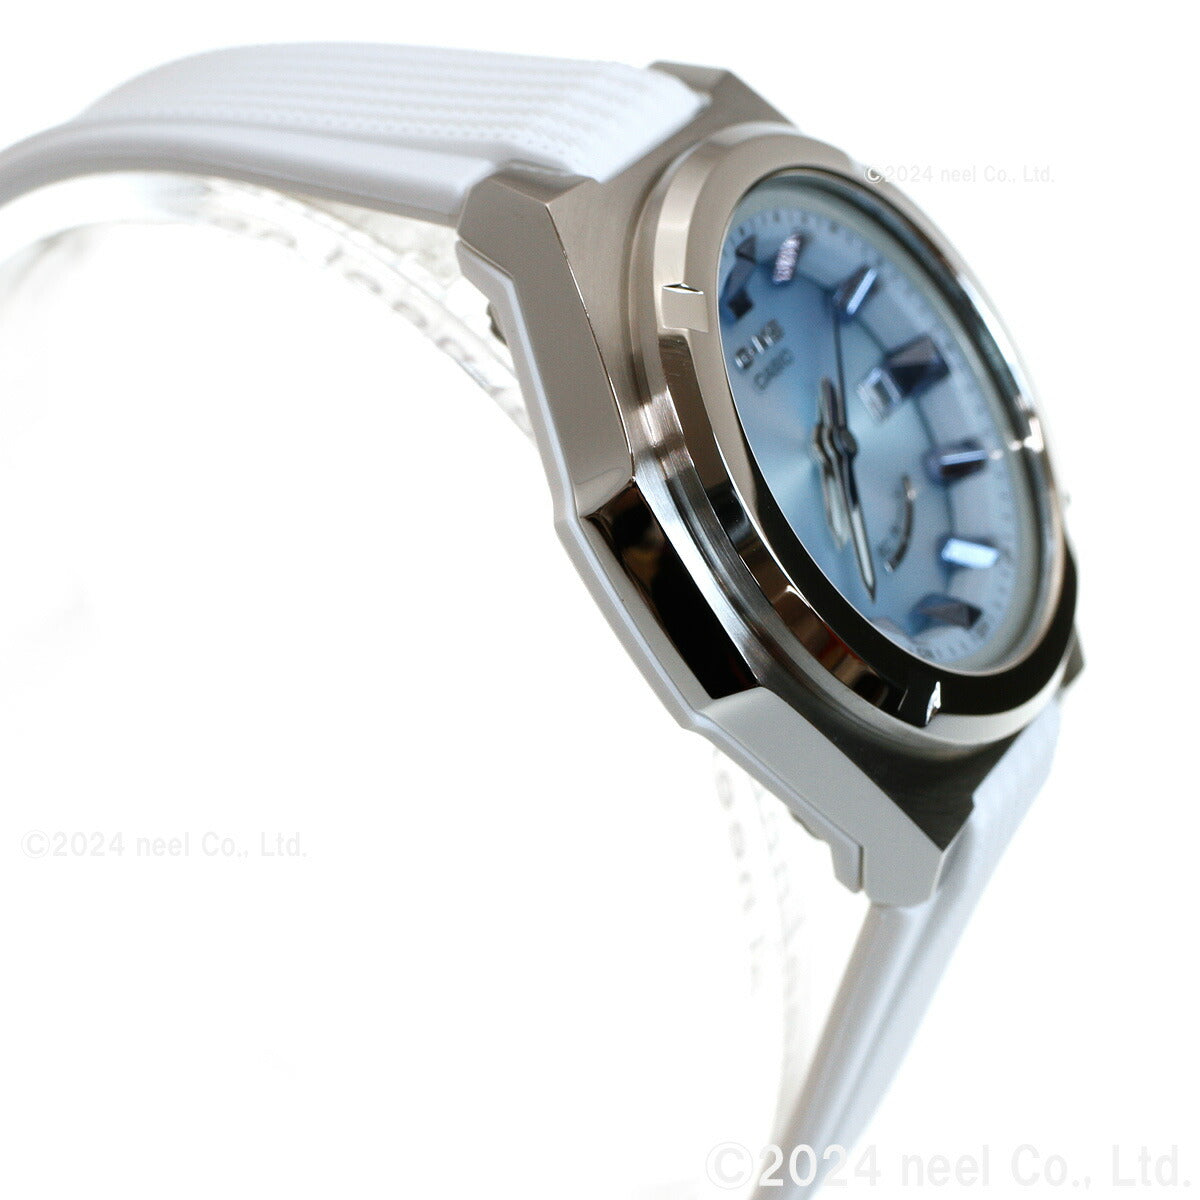 BABY-G カシオ ベビーG レディース G-MS 電波 ソーラー 腕時計 タフソーラー MSG-W300-7AJF